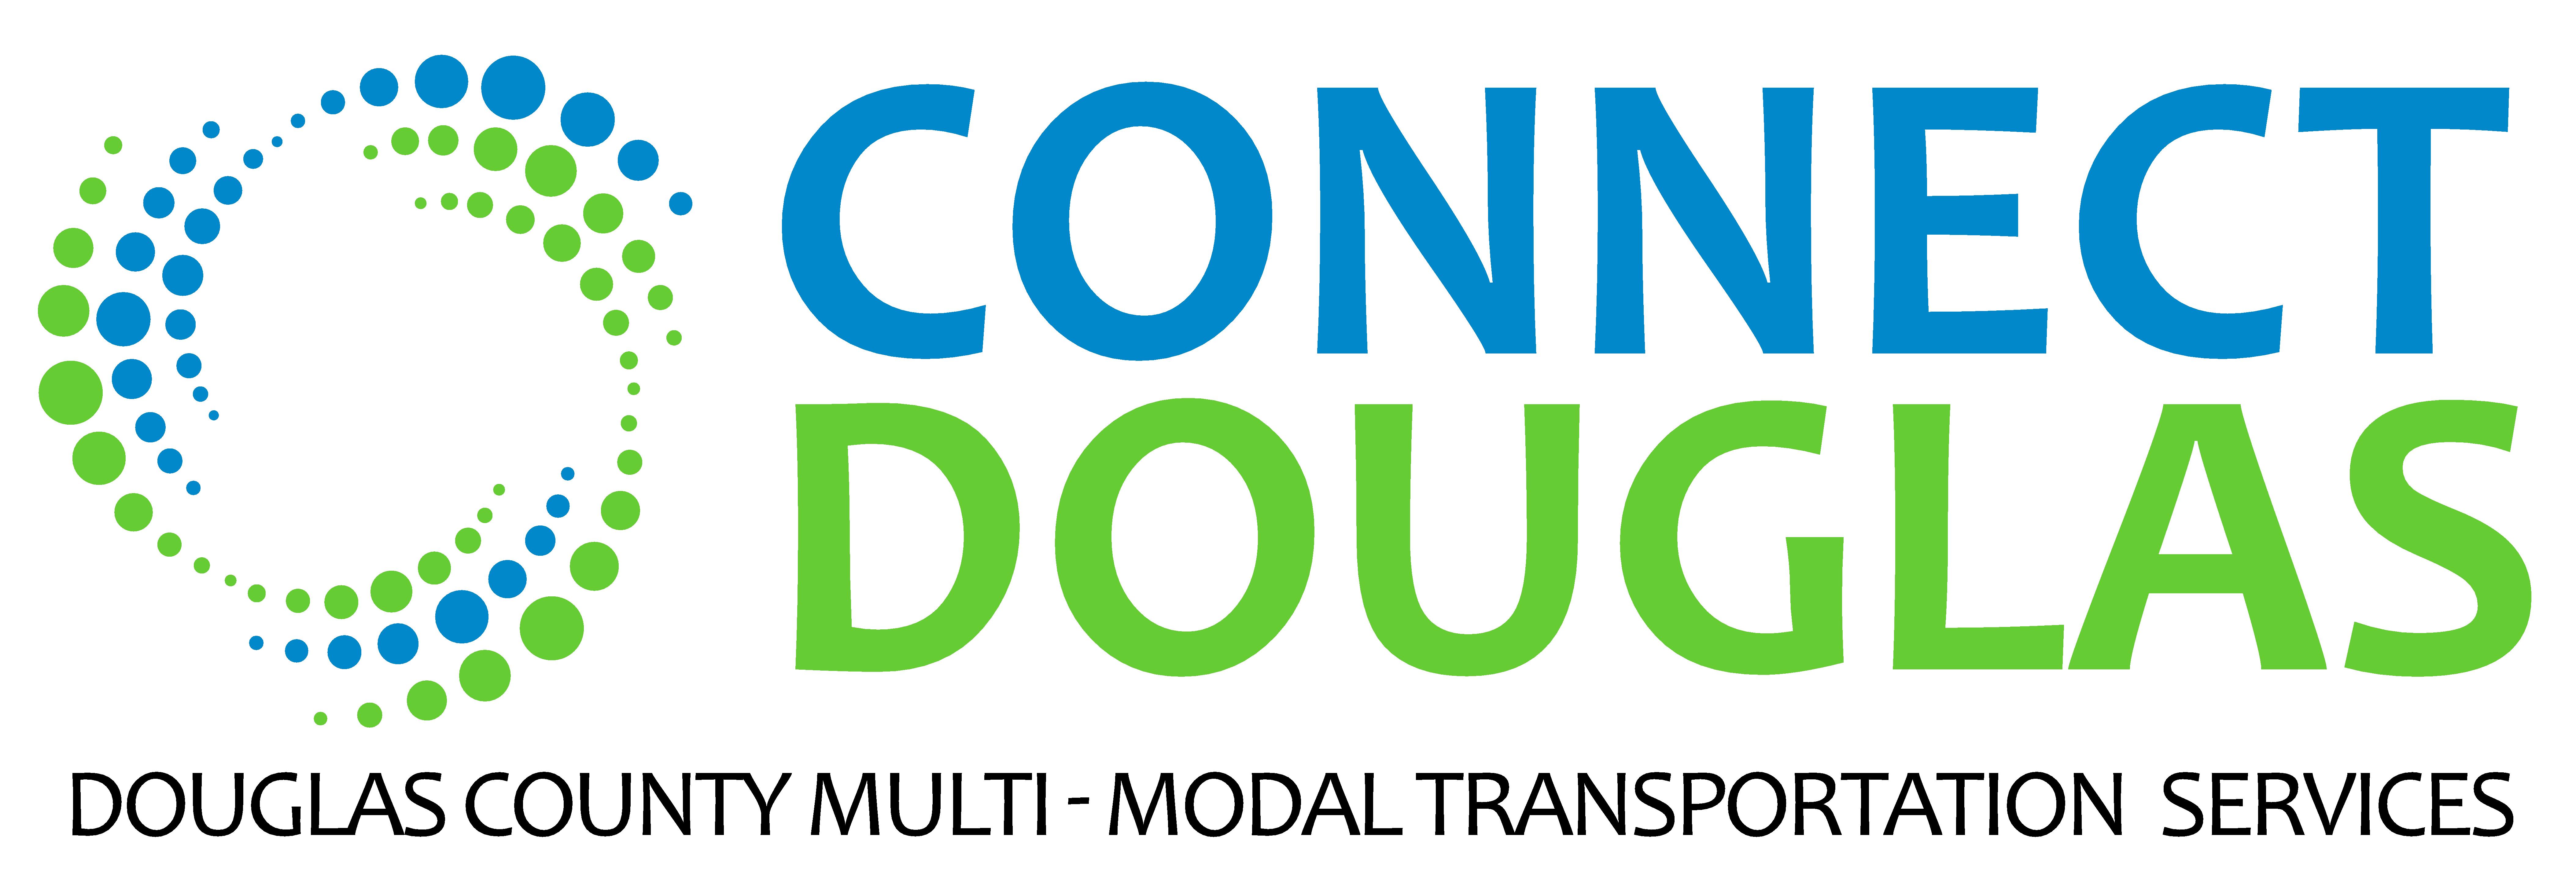 Douglas Logo - Douglas County unveils new transportation name and logo -